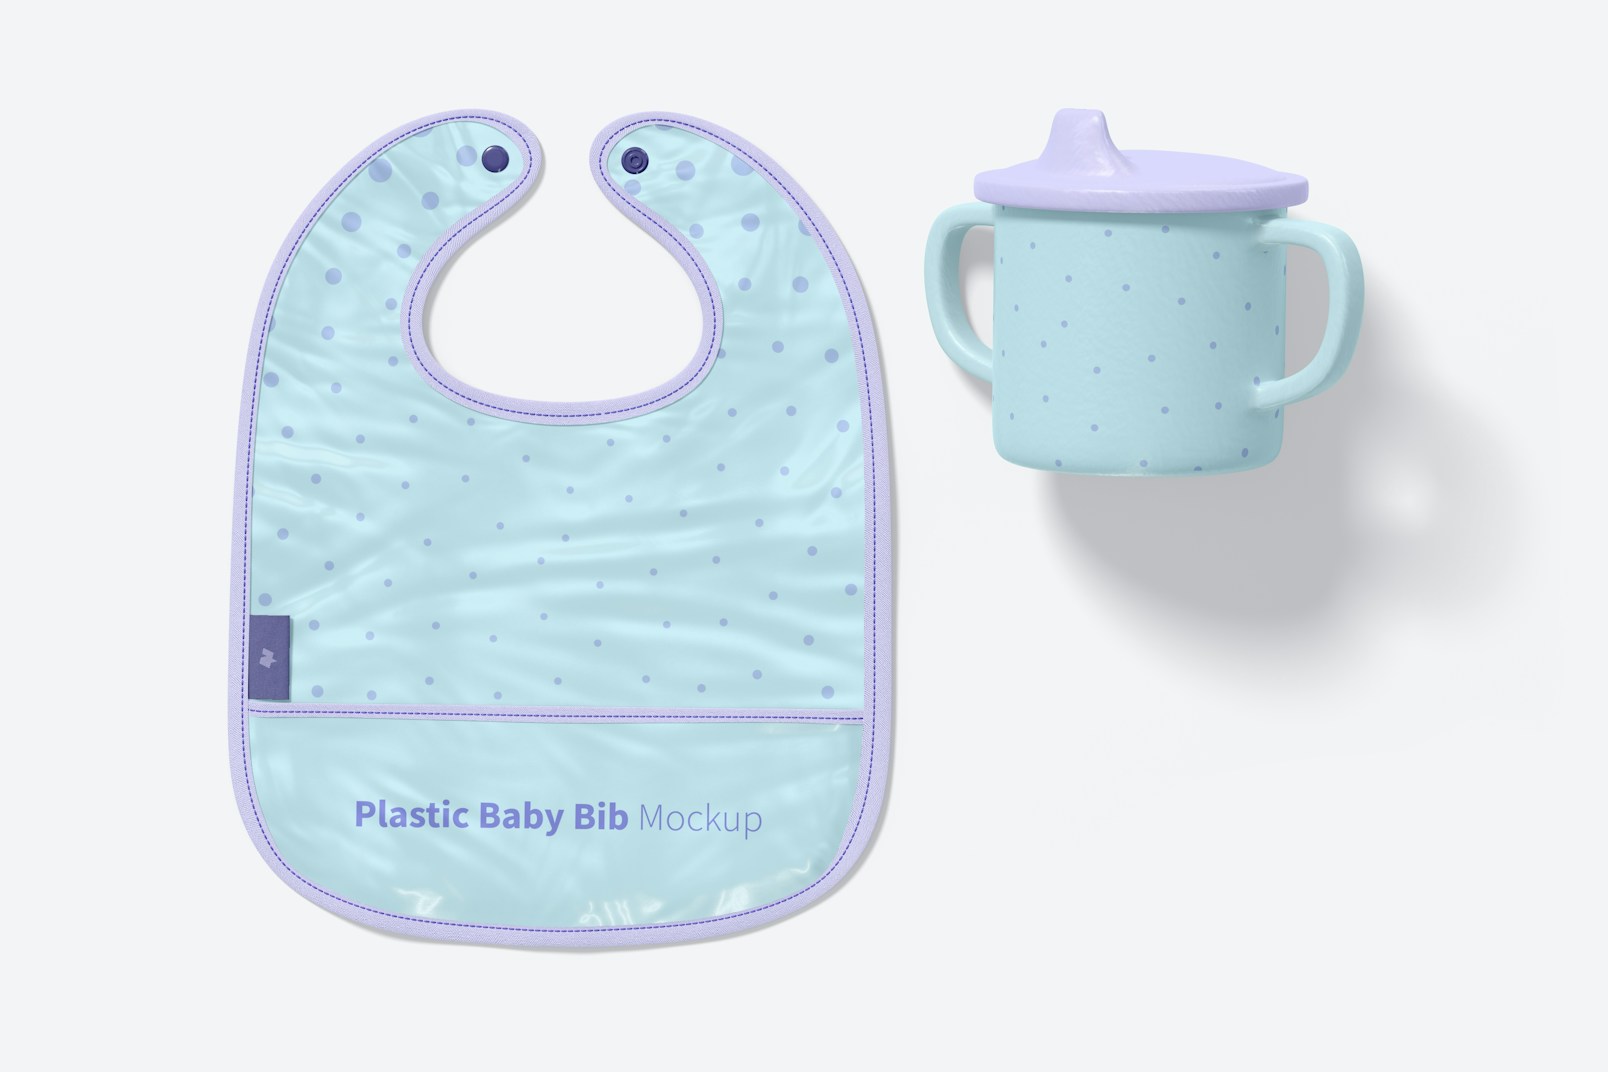 Plastic Baby Bib Mockup